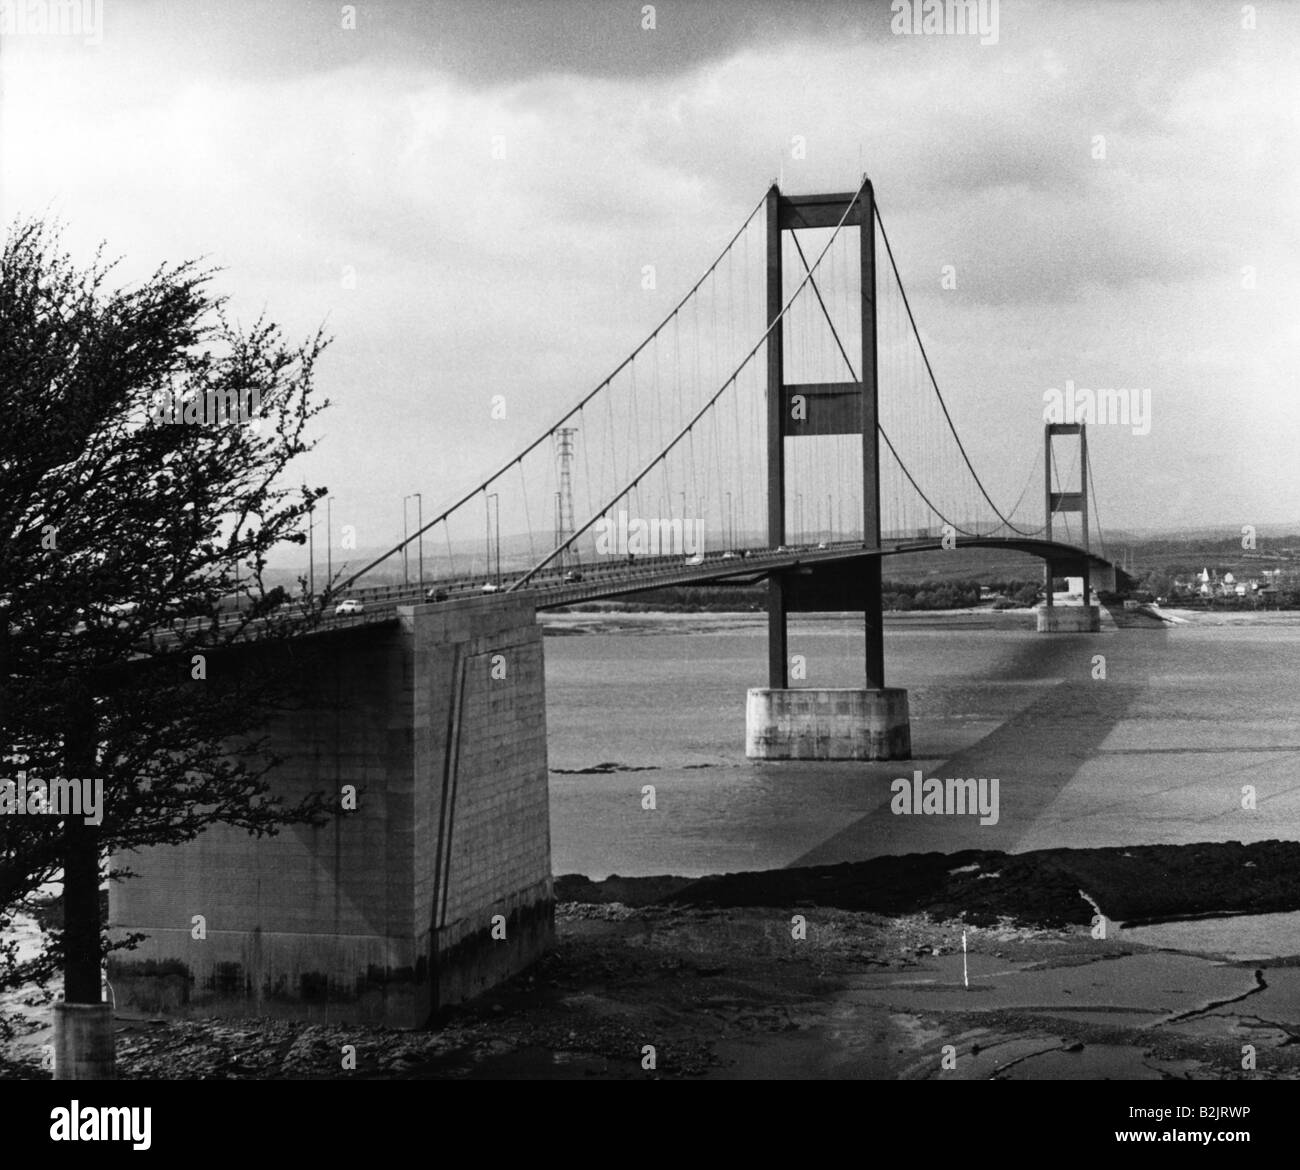 Geografia / viaggio, Gran Bretagna, paesaggio / paesaggi, ponti, il ponte Severn, sospensione ponte, data di apertura 8.9.1966, 1960s, Foto Stock